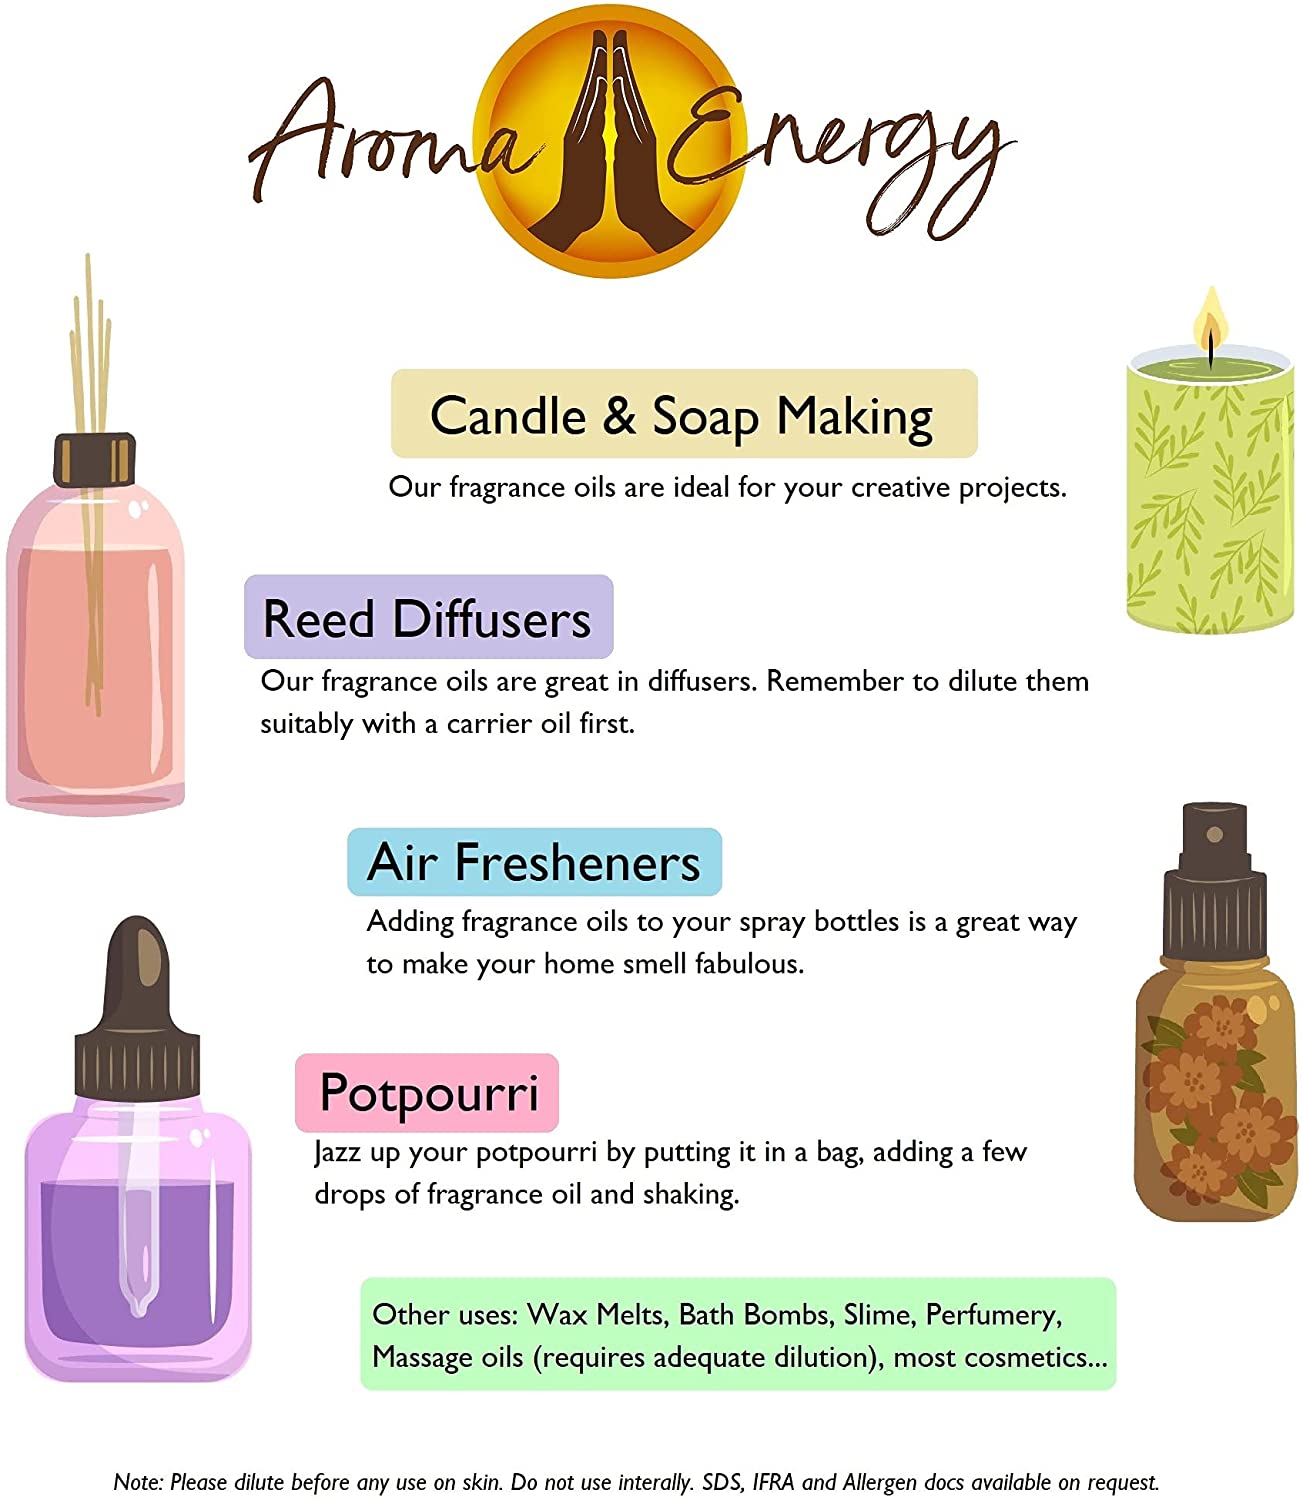 Pear Drop Fragrance Oil - Aroma Energy